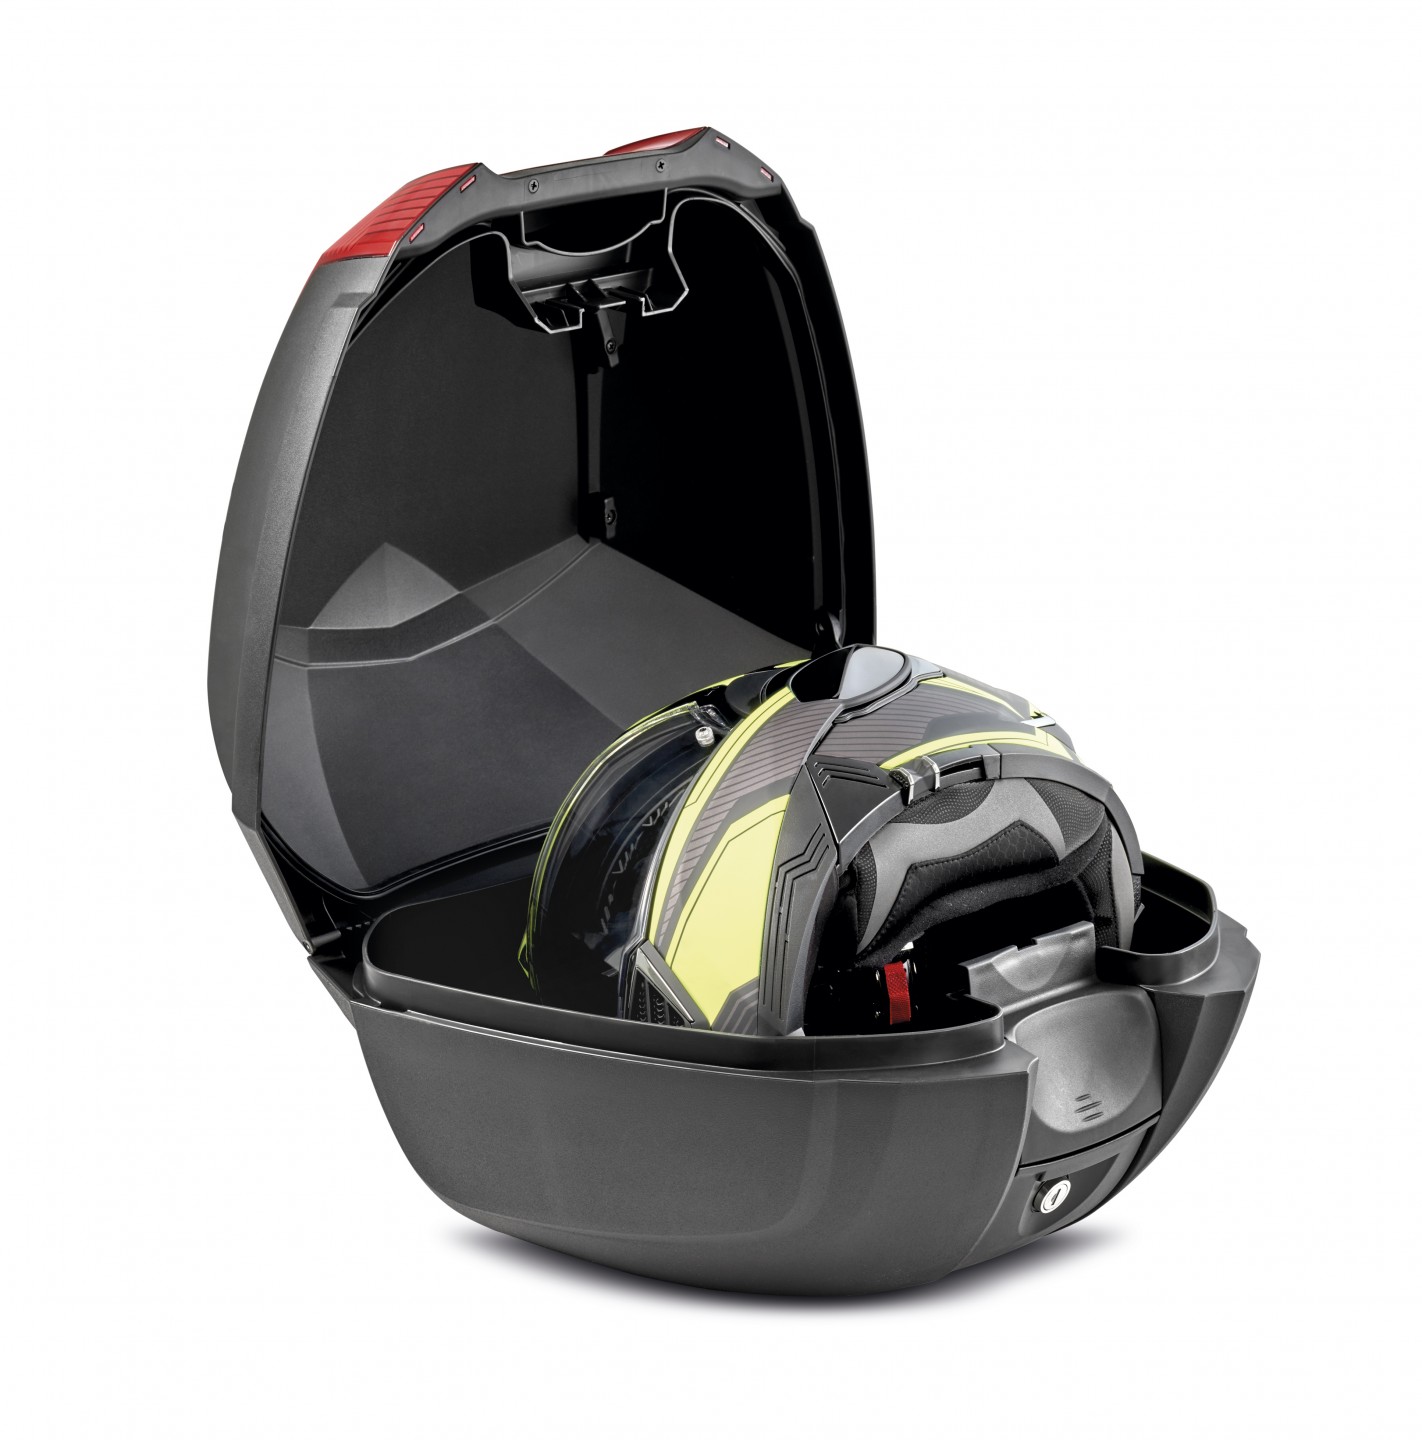 Nuevo baúl para el casco integral: ultracompacto, y en todos los colores KYMCO - KYMCO España